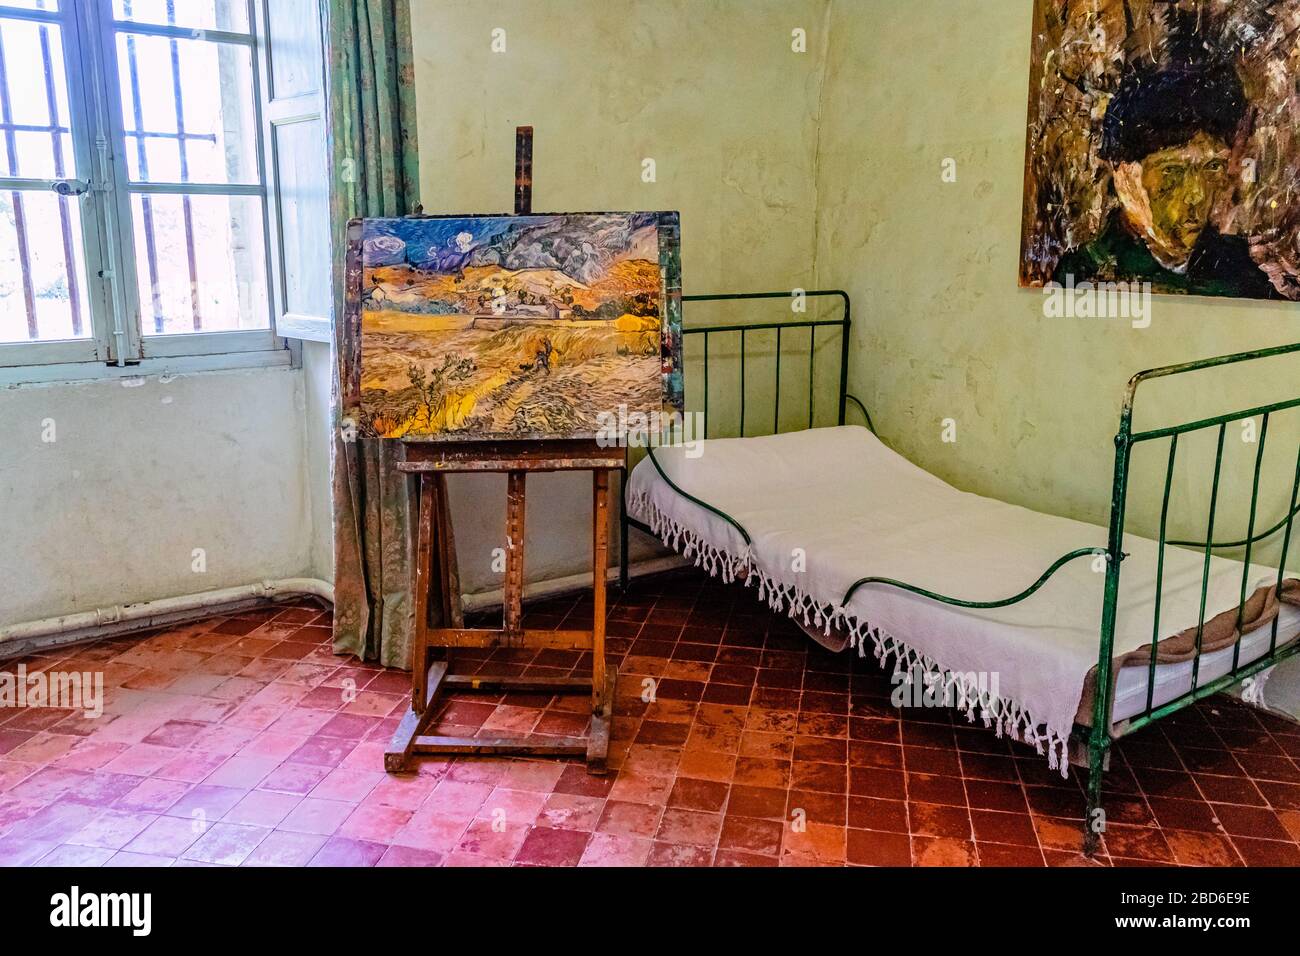 L'ancienne chambre de l'artiste Vincent Van Gogh à l'asile Saint-Paul, Saint-Rémy-de-Provence, France. Printemps 2017. Banque D'Images